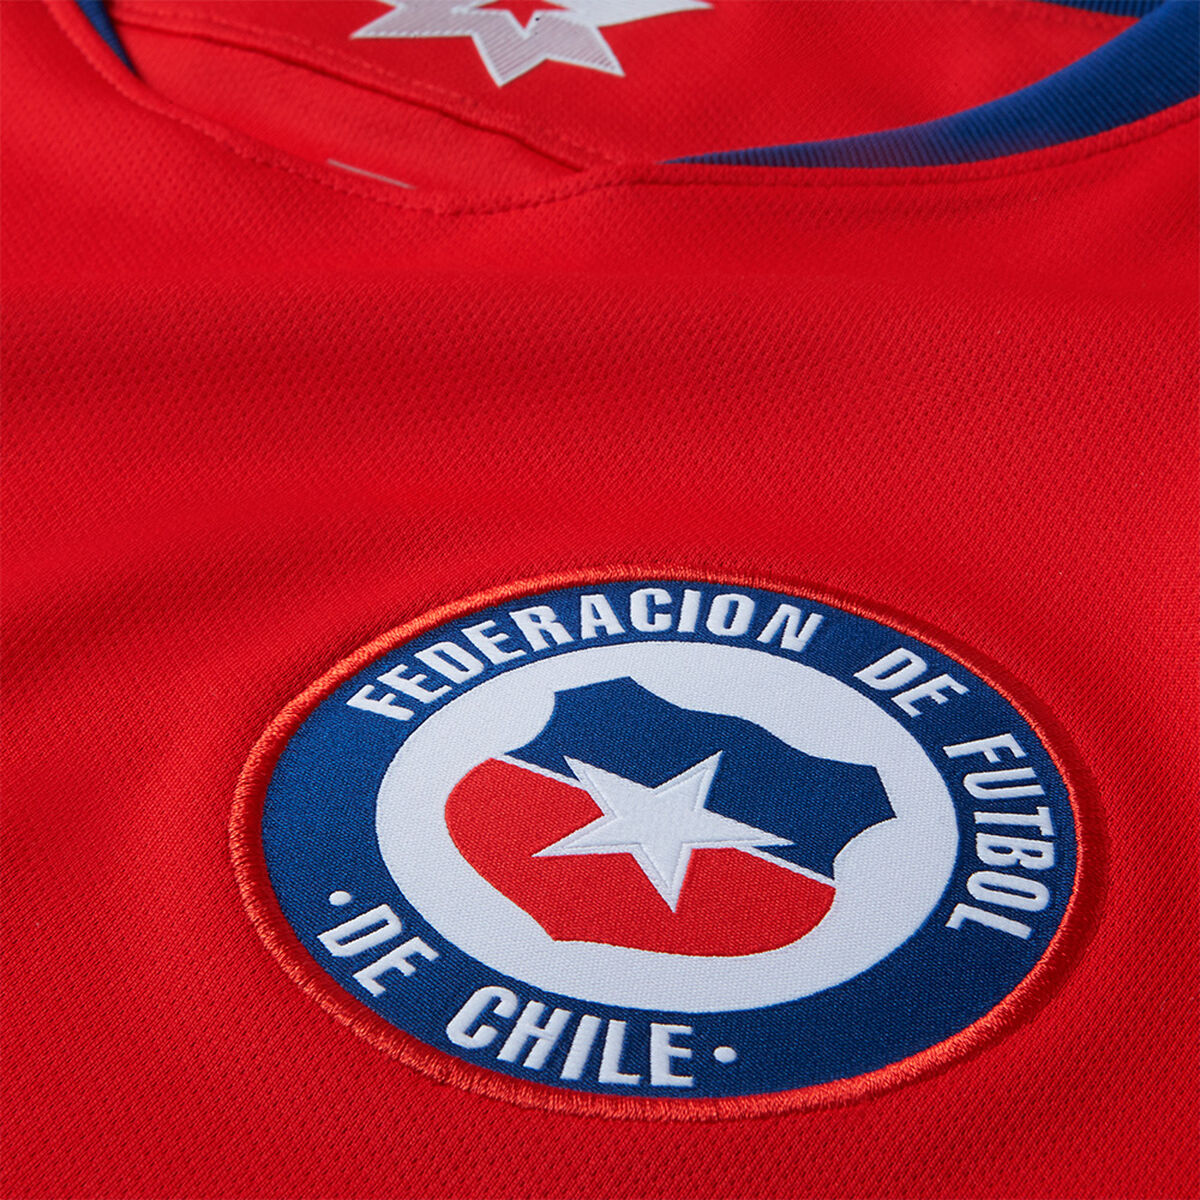 Camiseta Nike Hombre Selección Chilena 2018